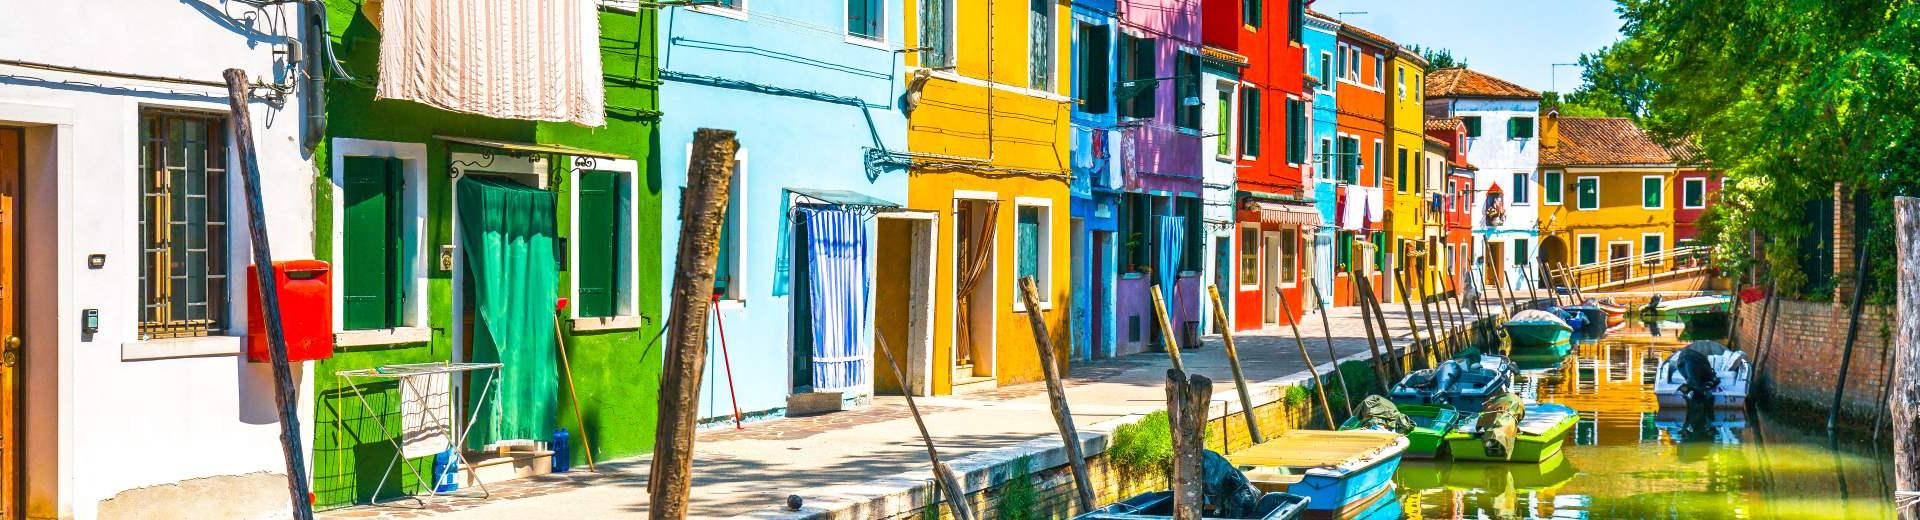 Ferienwohnungen & Ferienhäuser für Urlaub in Venetien - Casamundo